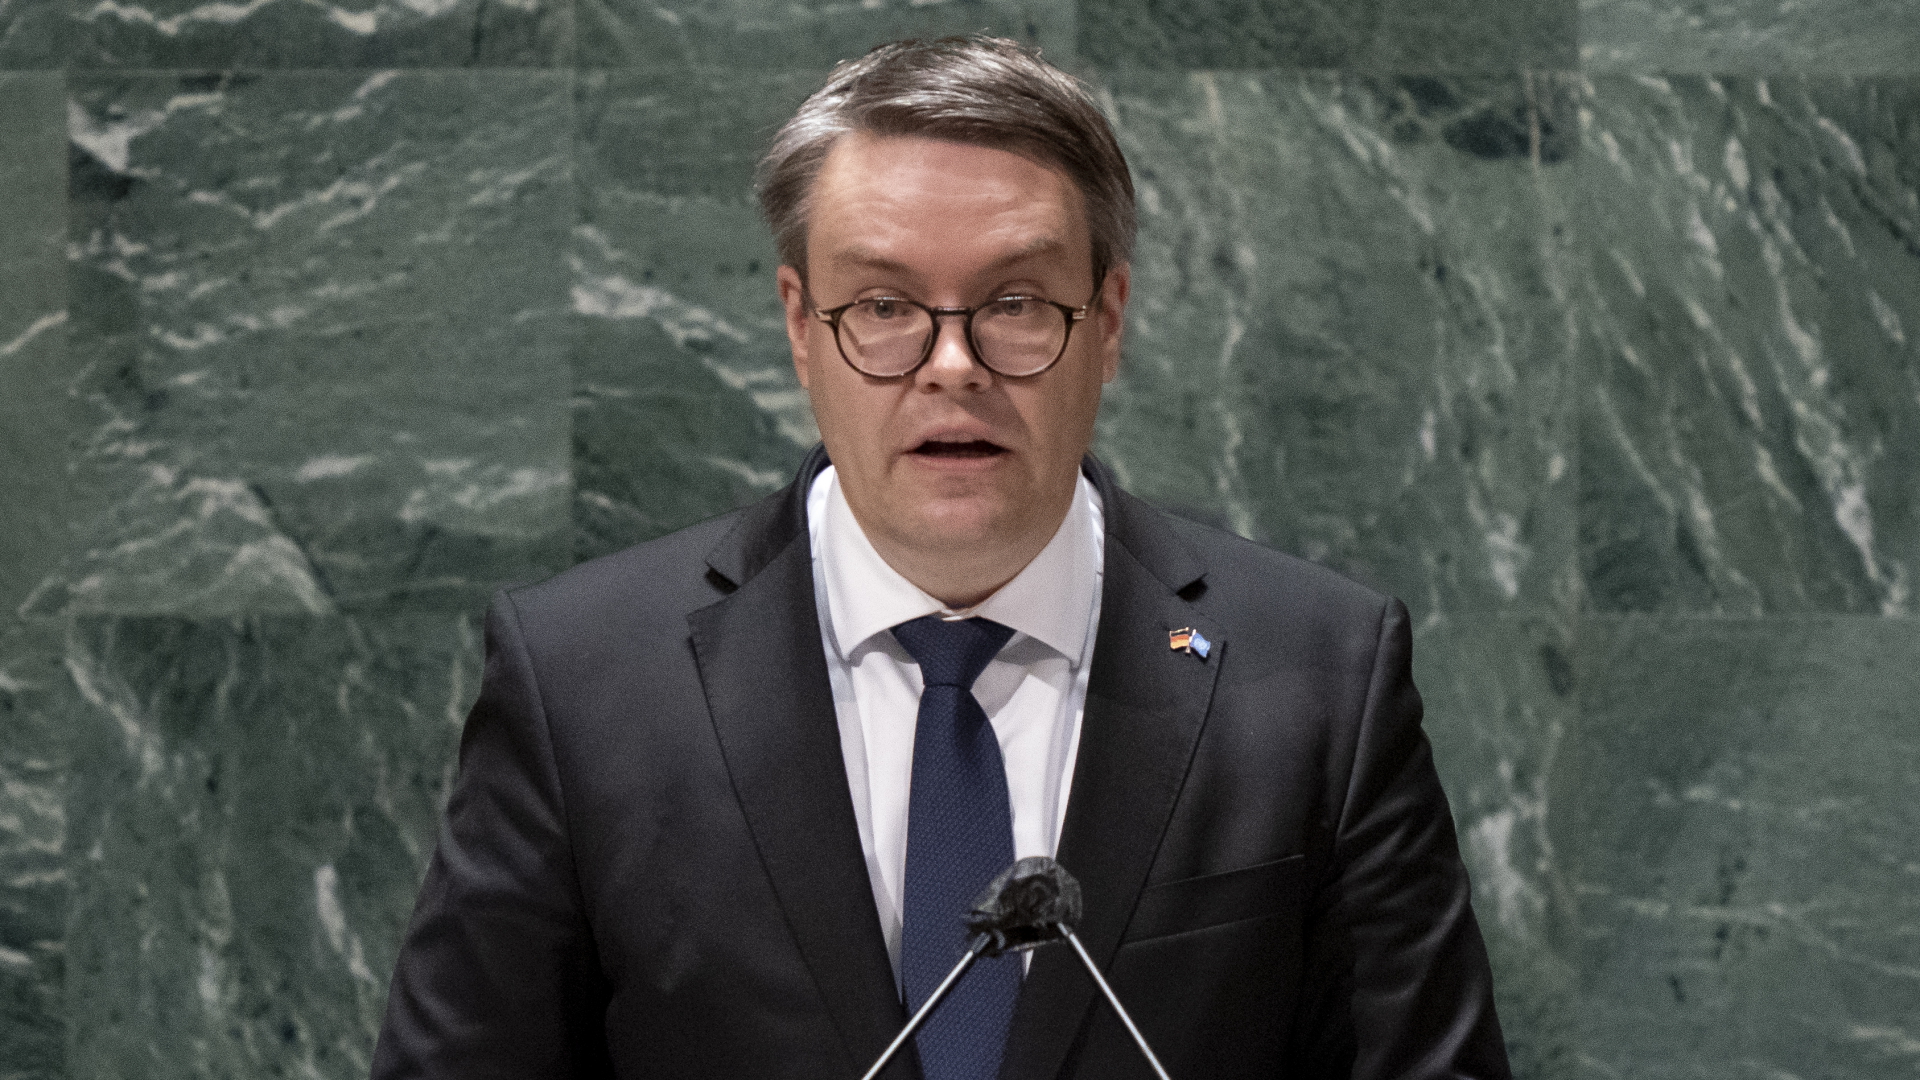 Tobias Lindner, deutscher Staatsminister bei der Bundesministerin des Auswärtigen, spricht in der UN-Vollversammlung am Sitz der Vereinten Nationen | dpa